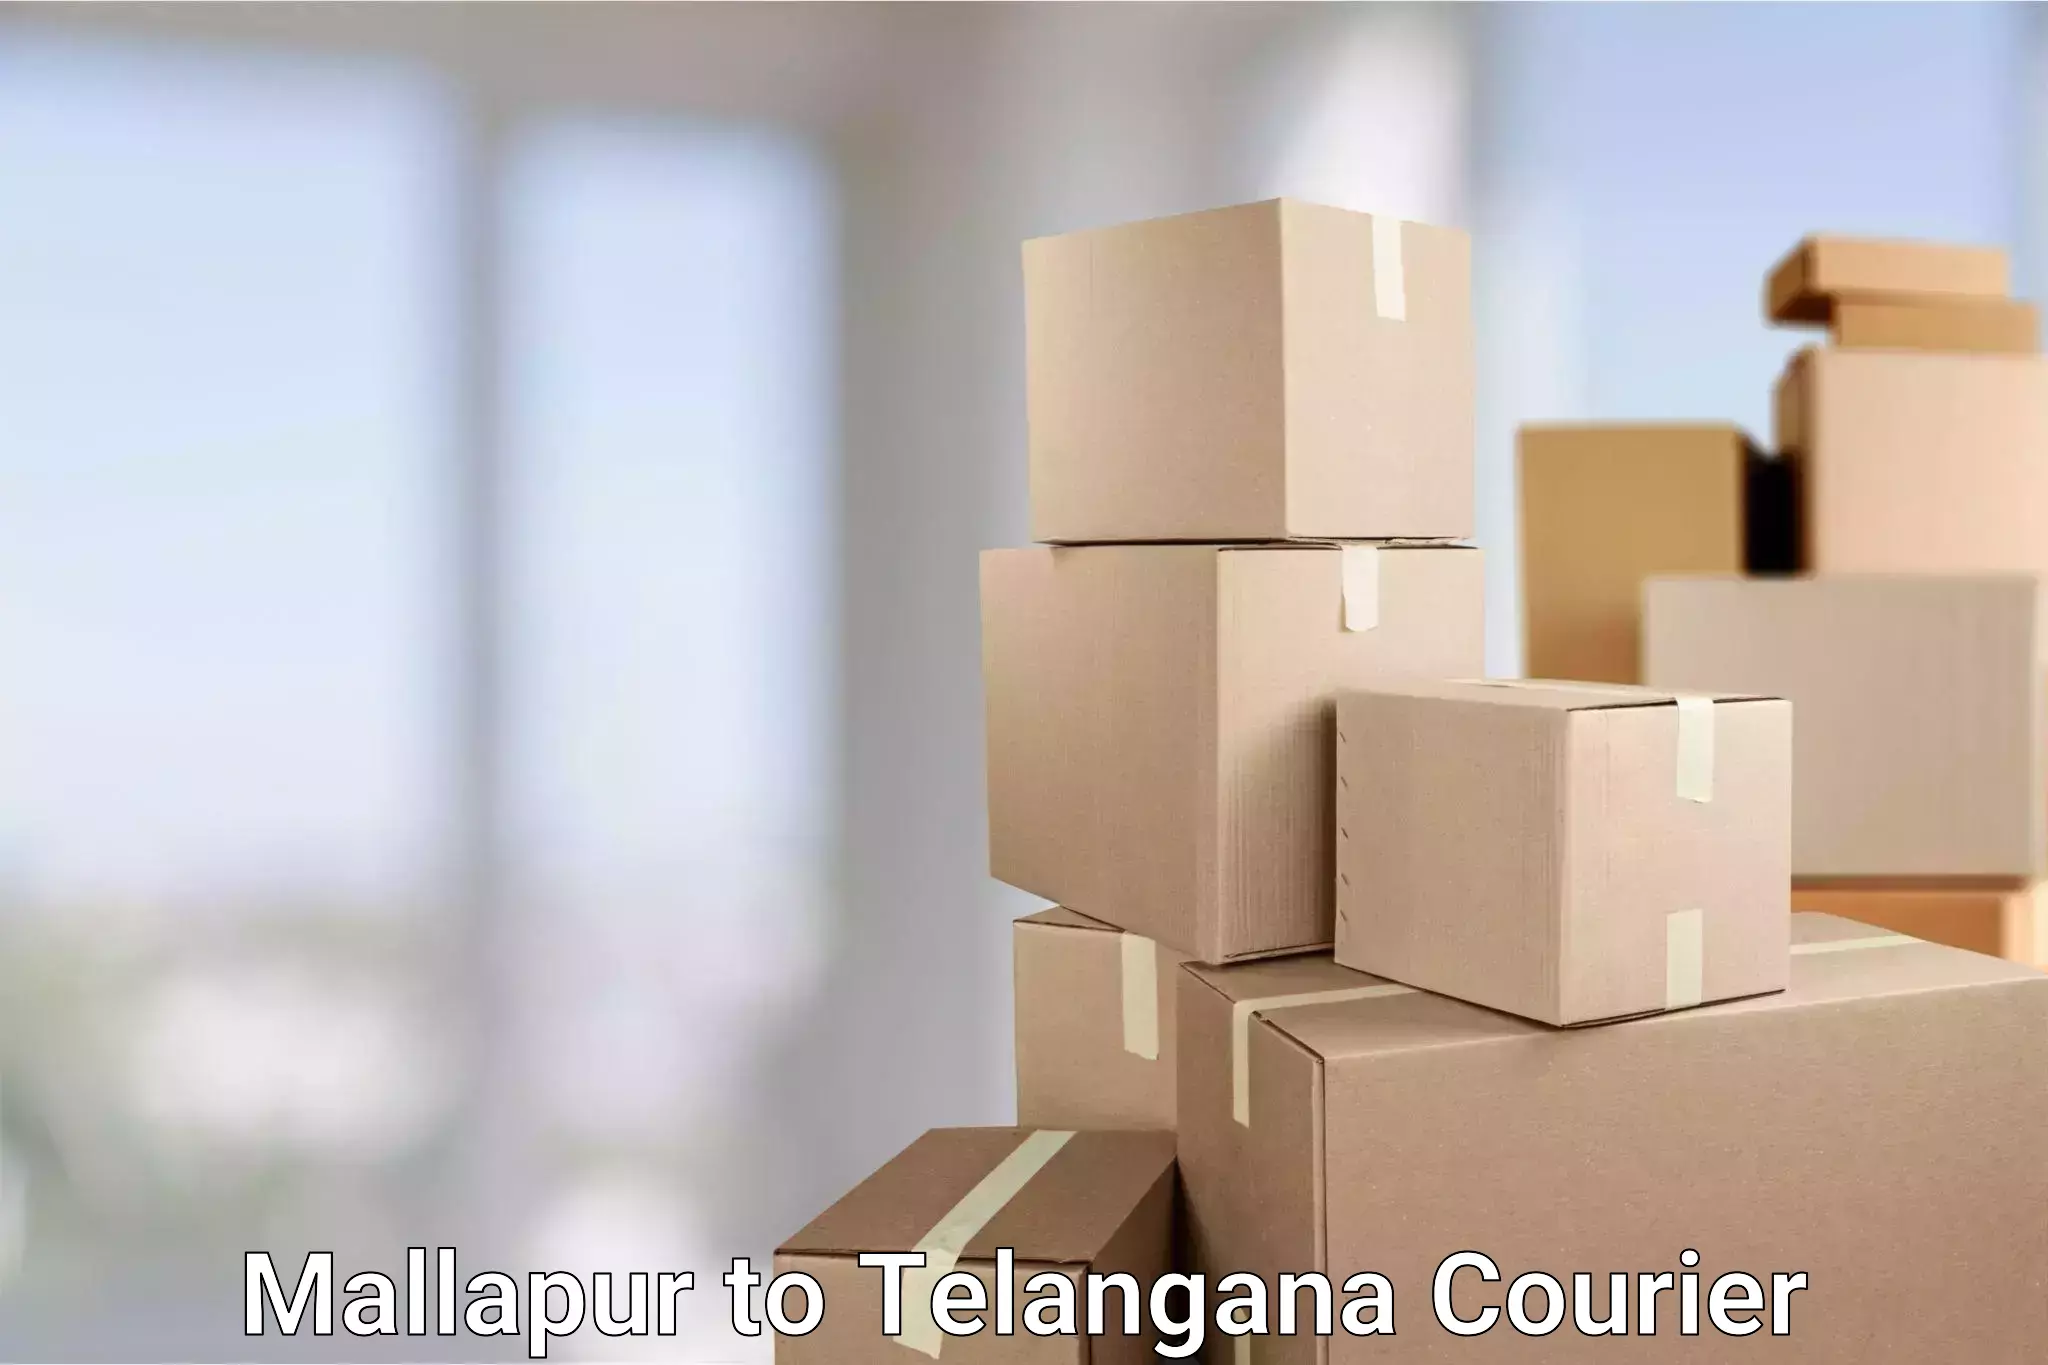 Wholesale parcel delivery in Mallapur to Dharmapuri Jagtial